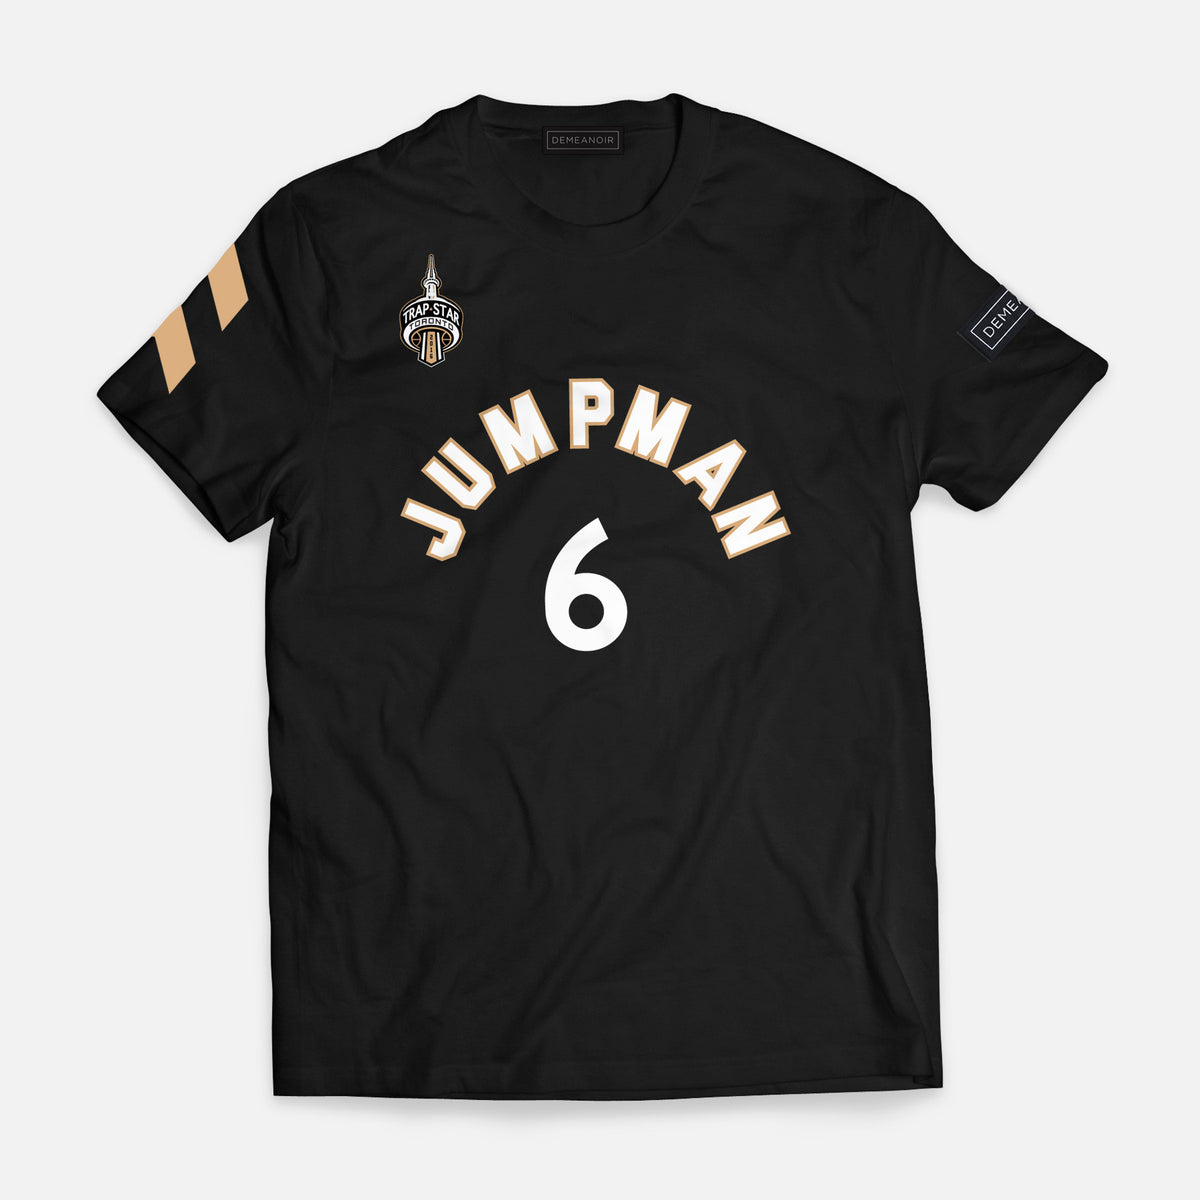 6 Jumpman T-Shirt - DEMEANOIR - 1